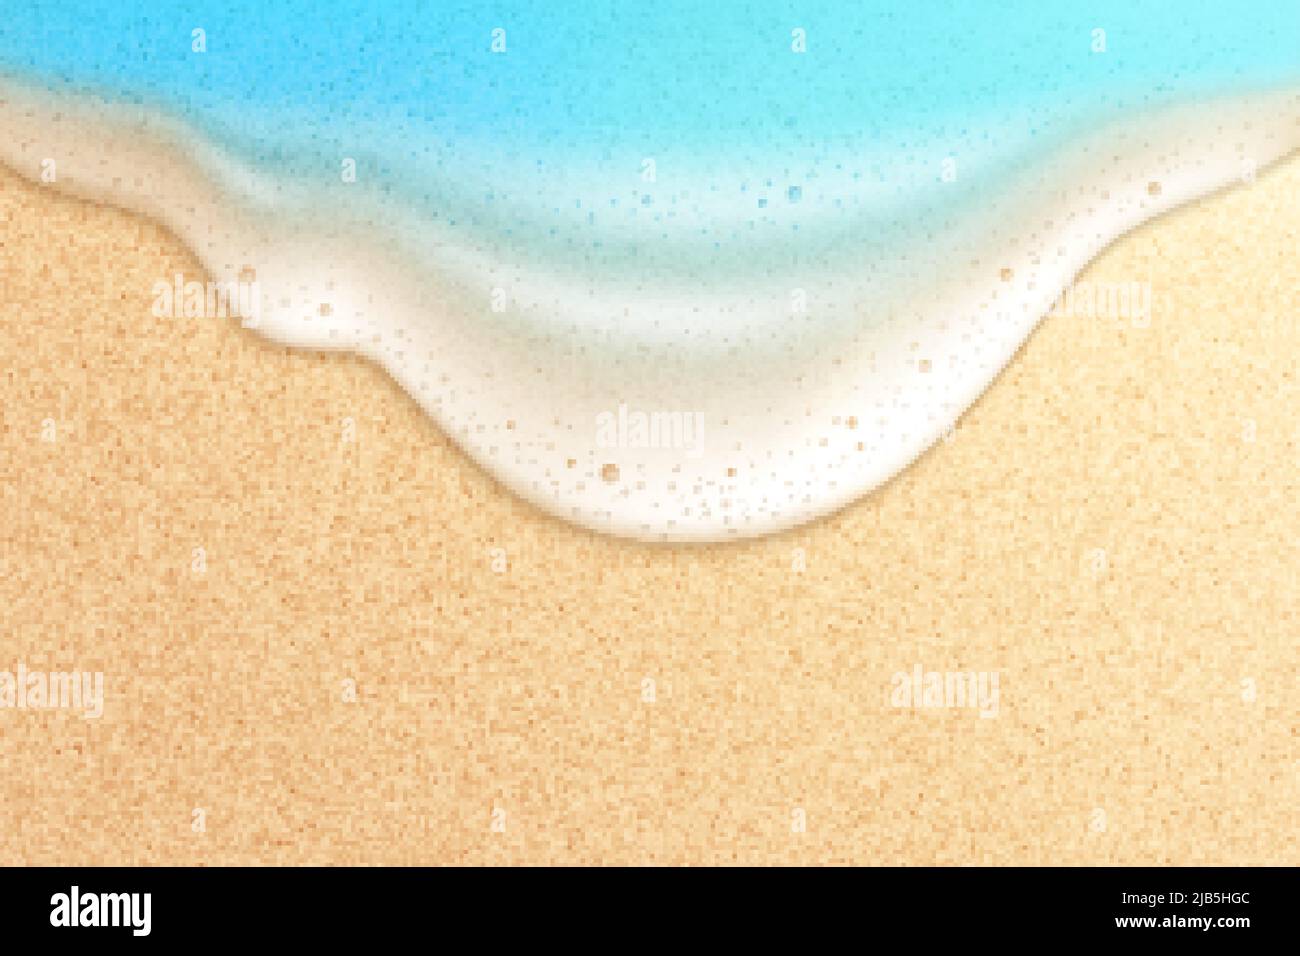 Wellenstrand realistische Komposition mit Draufsicht auf sandigen Boden mit Meerwasser und Schaumblasen Vektorgrafik Stock Vektor